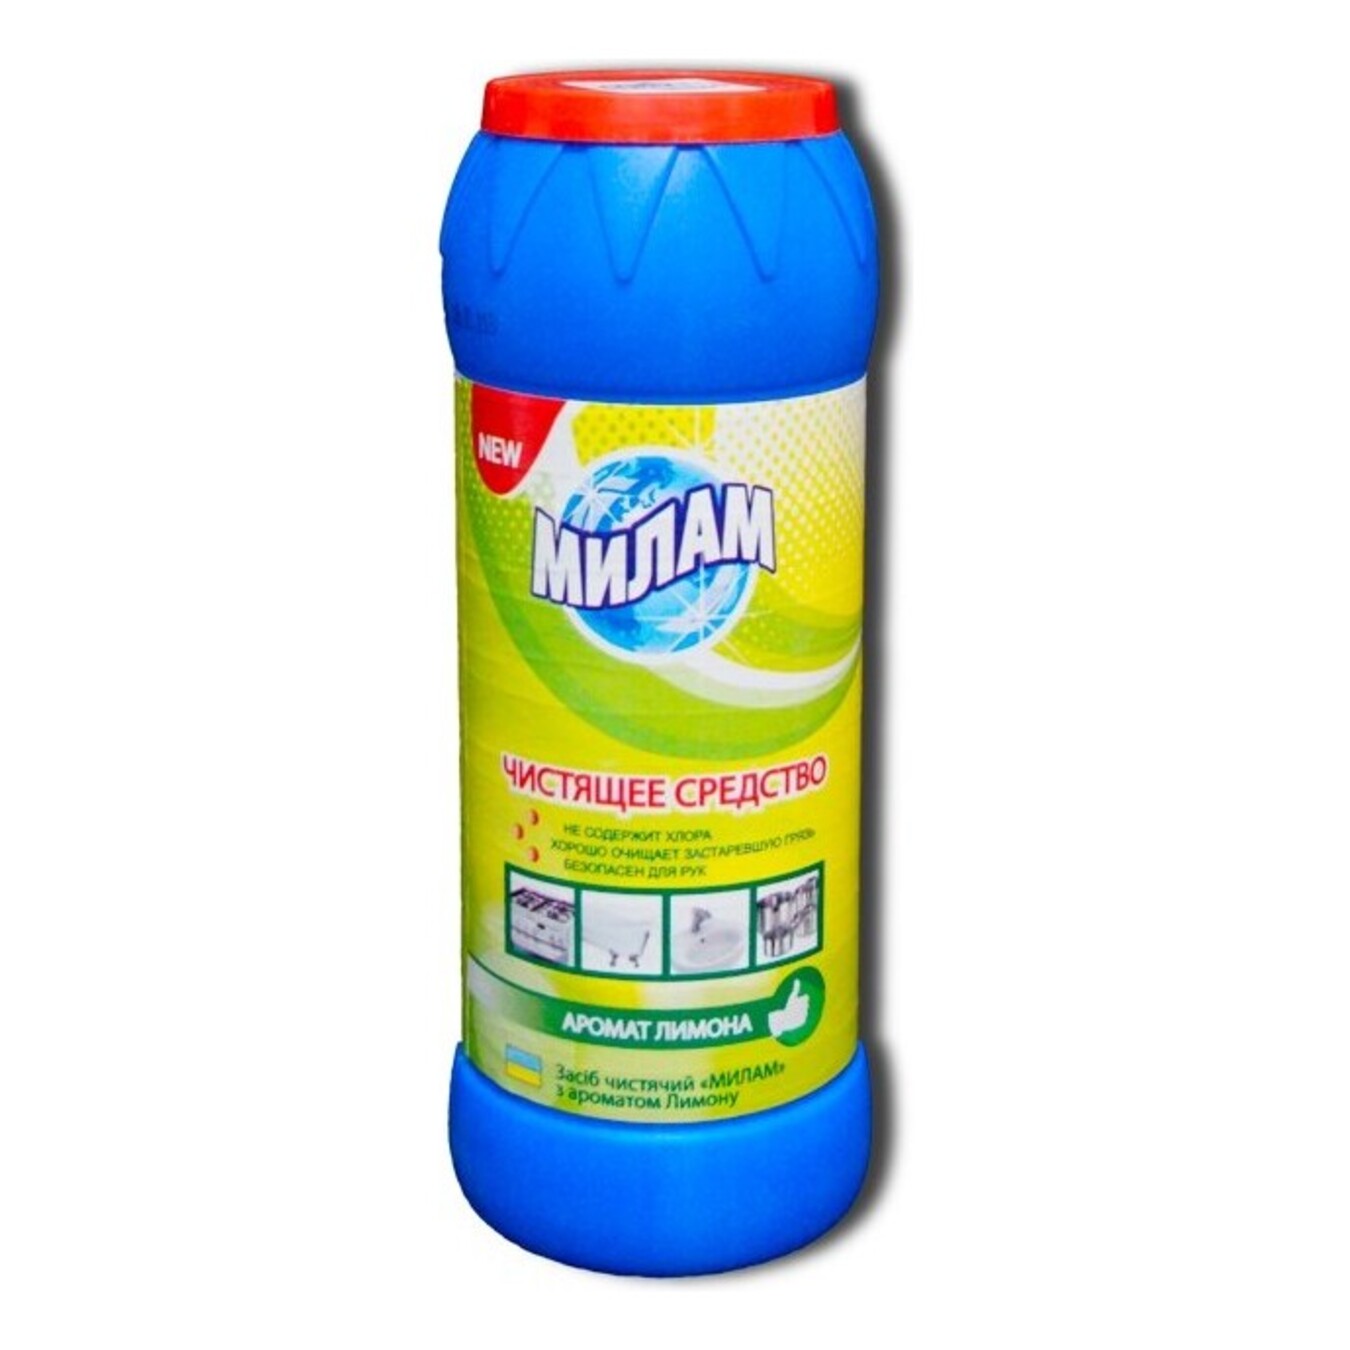 Milam Lemon powder for cleaning 500g